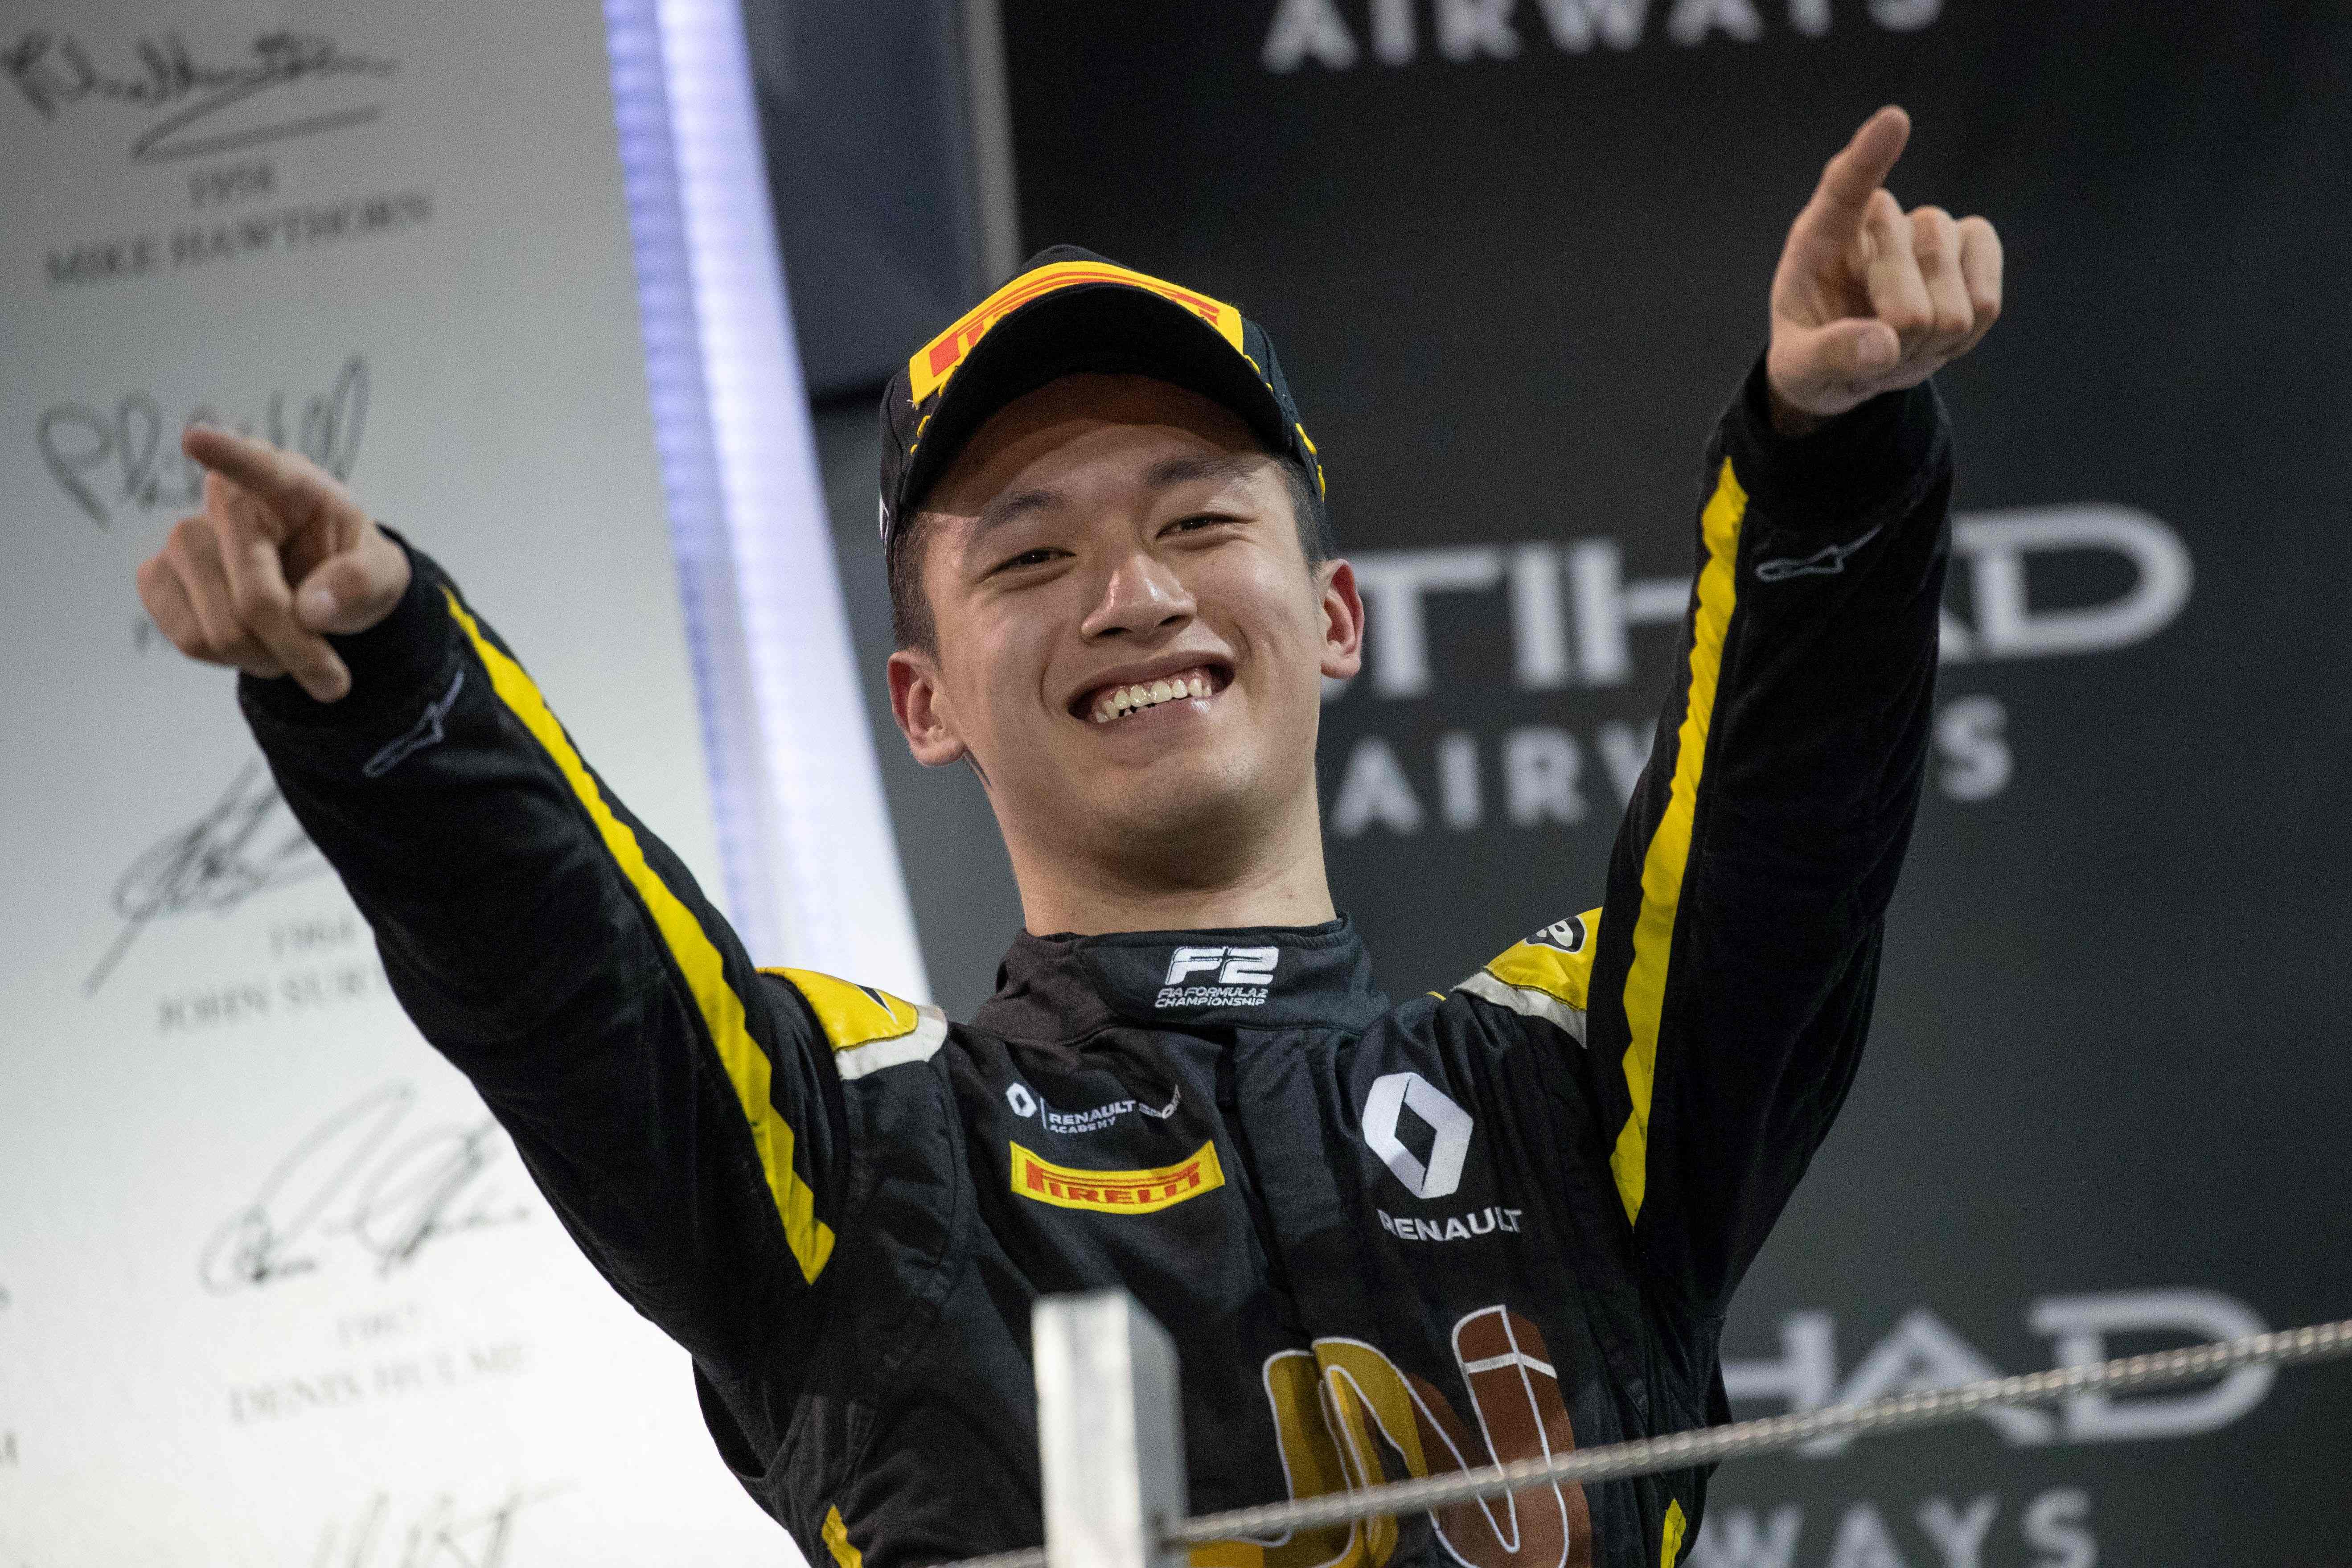 Guanyu Zhou will join F1 next season